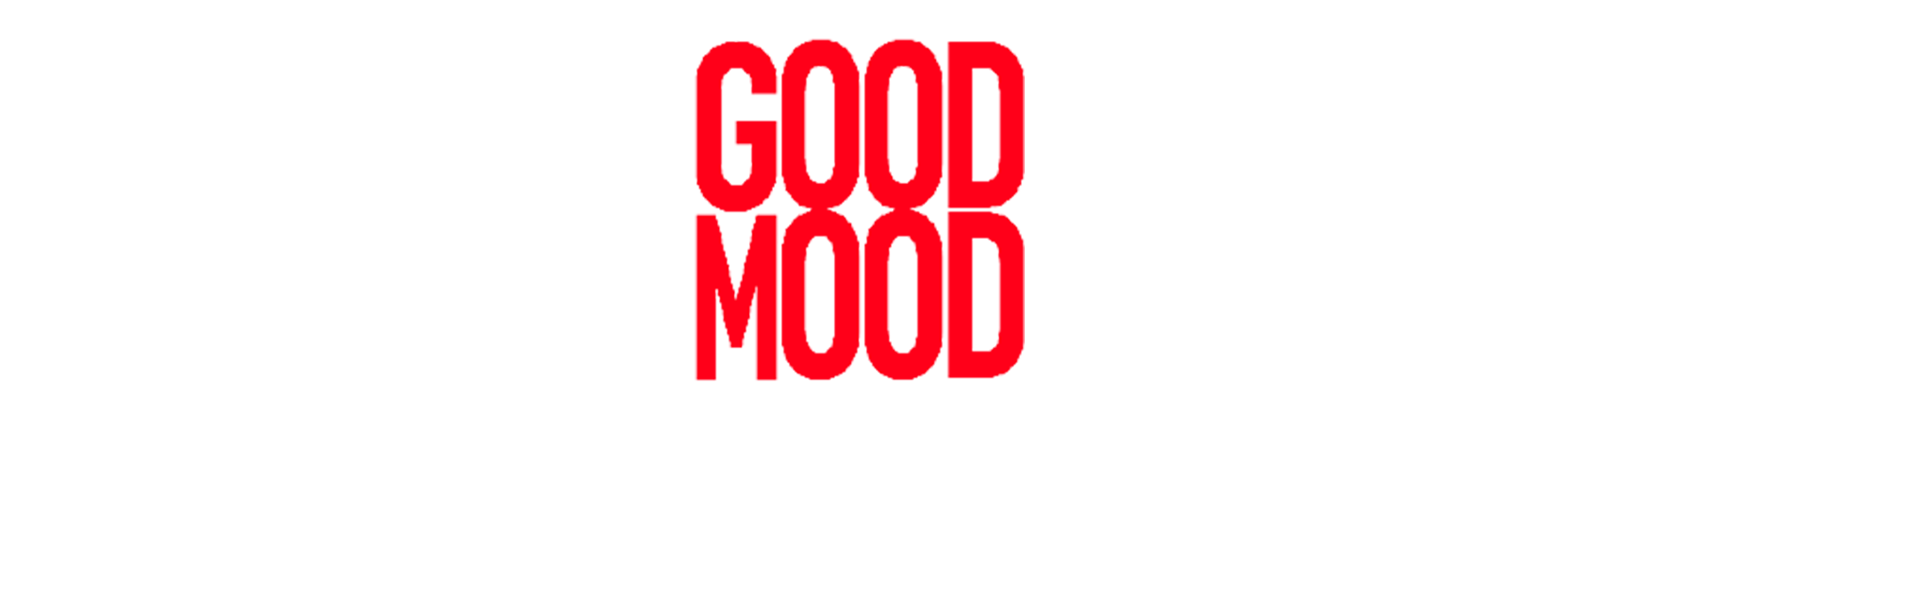 Good Mood di Nicola Canonico – Produzioni e Distribuzioni Teatrali